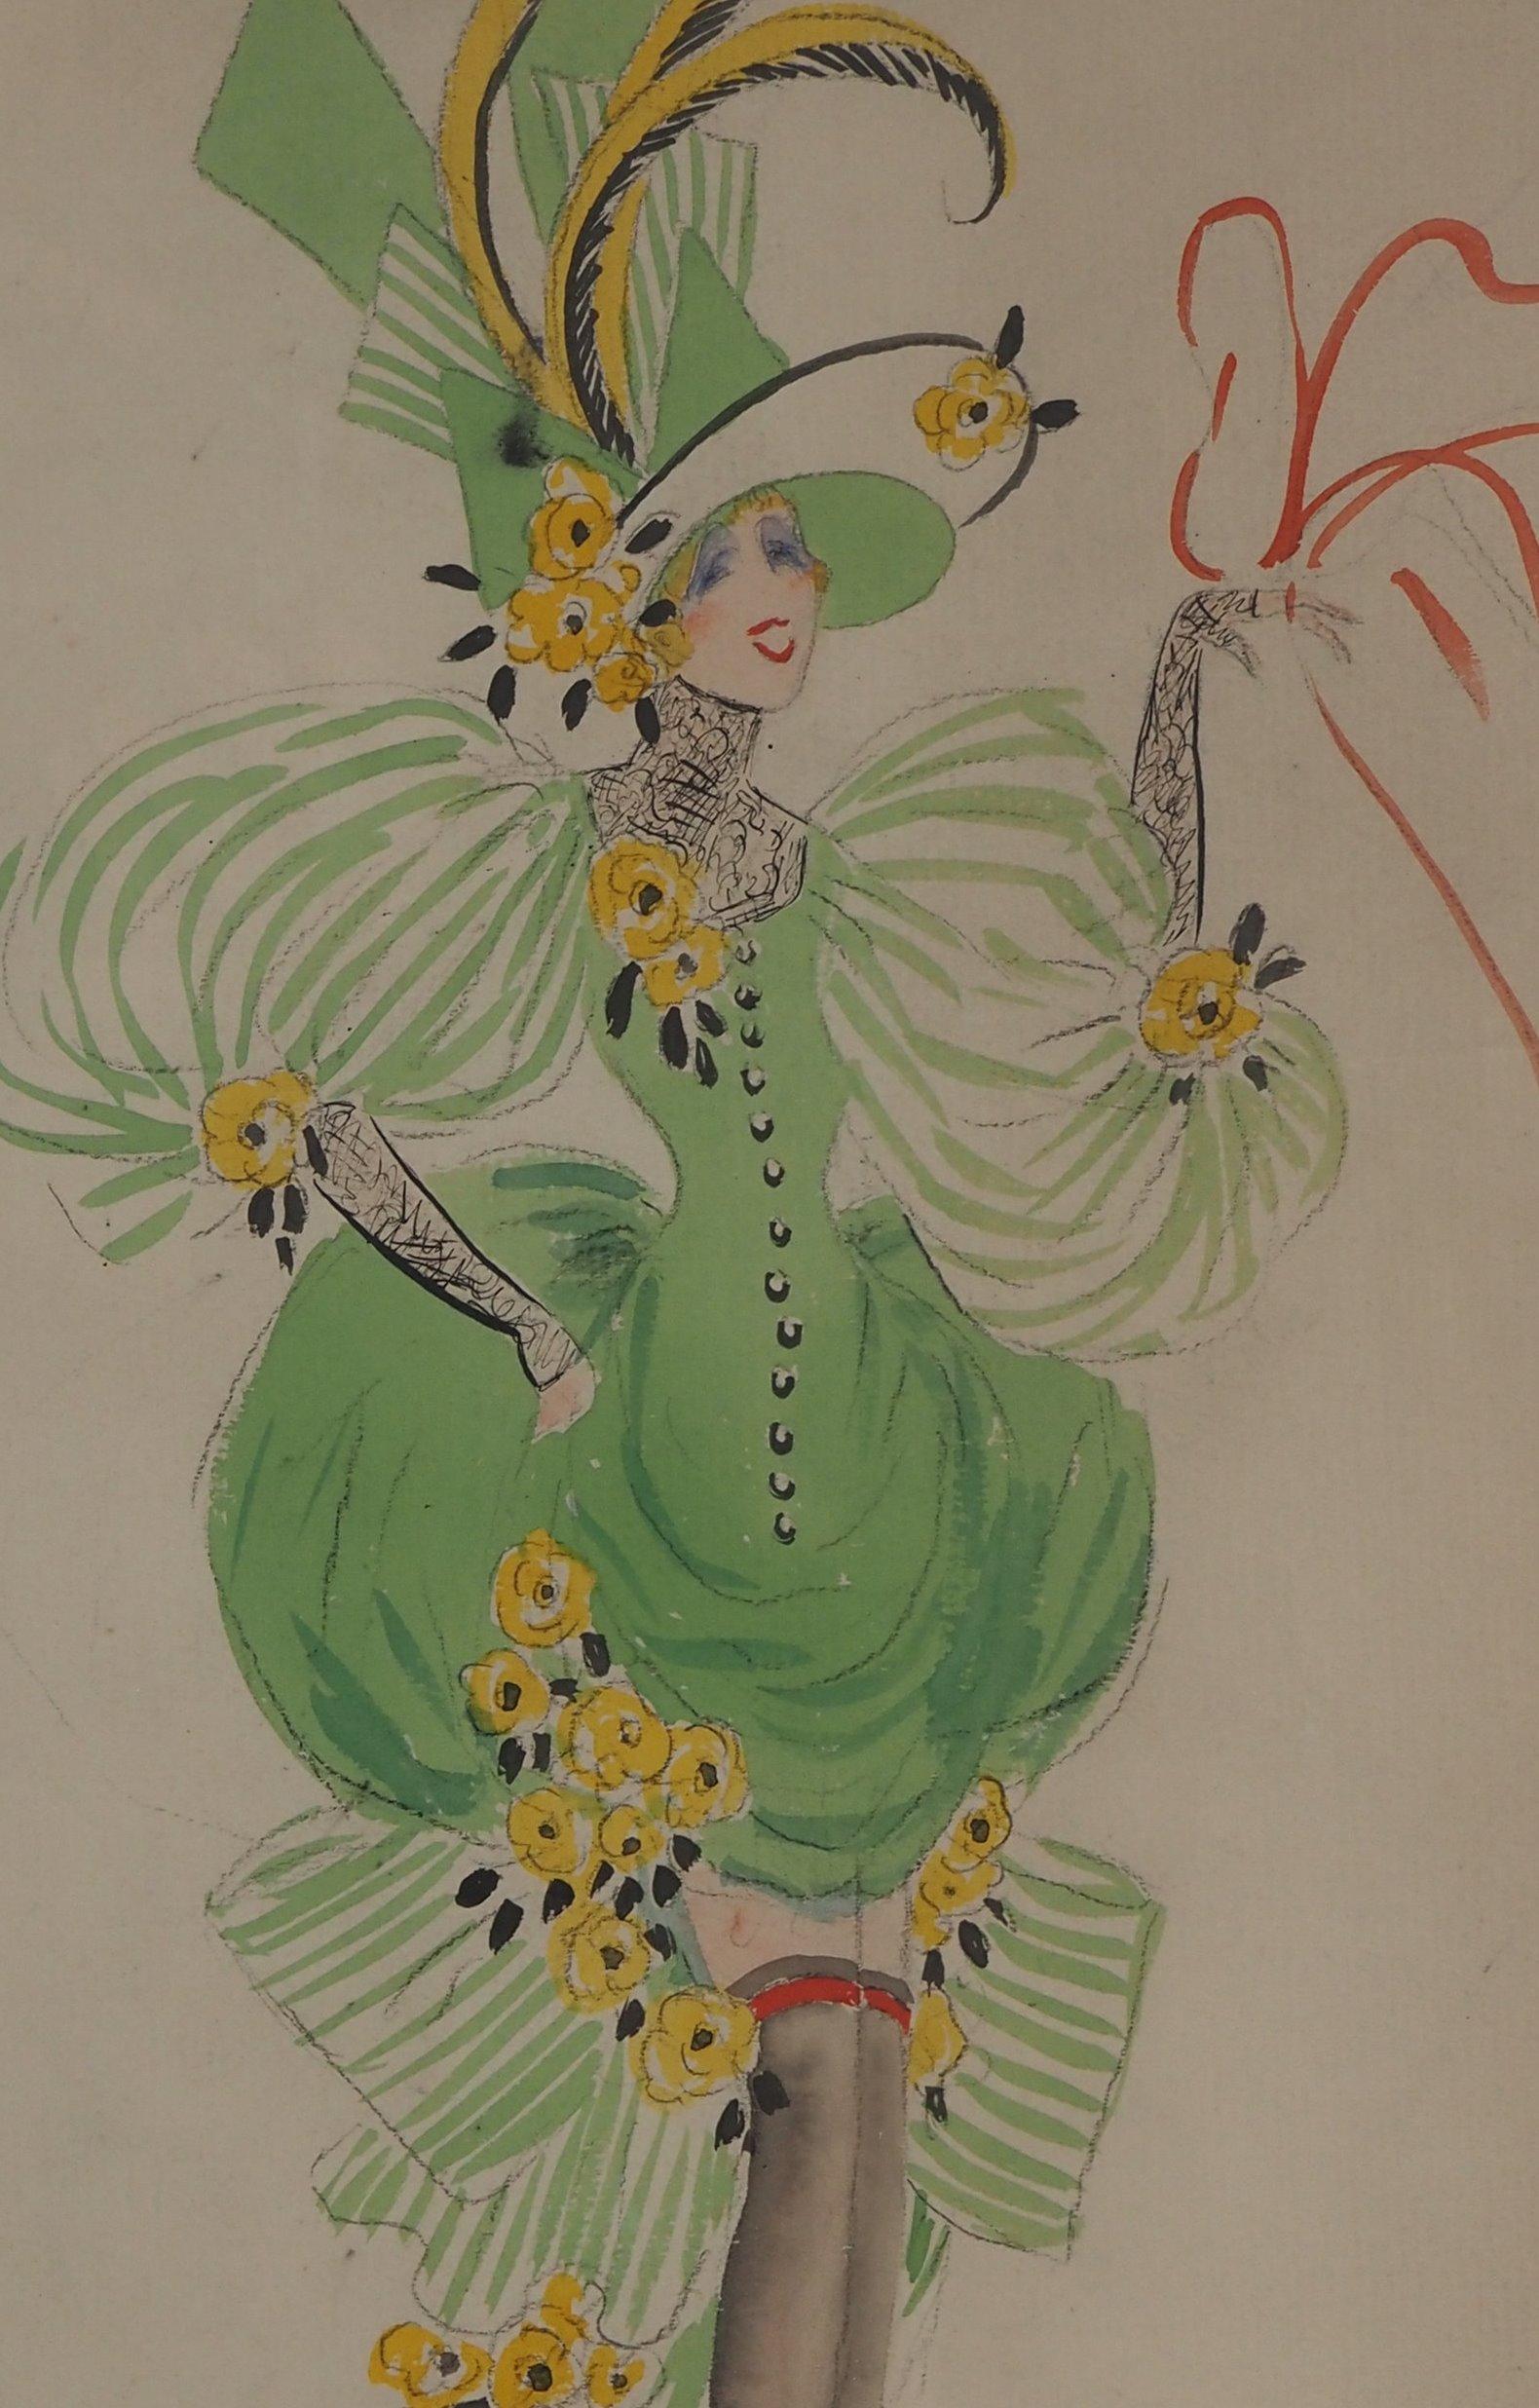 Jean Gabriel DOMERGUE (1889-1962)
Costume de théâtre : Allégorie du printemps et Petit chien 

Dessin original à l'encre et à l'aquarelle
Signature en bas à droite
Sur papier 32×25 cm à vue (c. 13 x 10in)
Présentée dans un cadre en bois doré 43 x 28